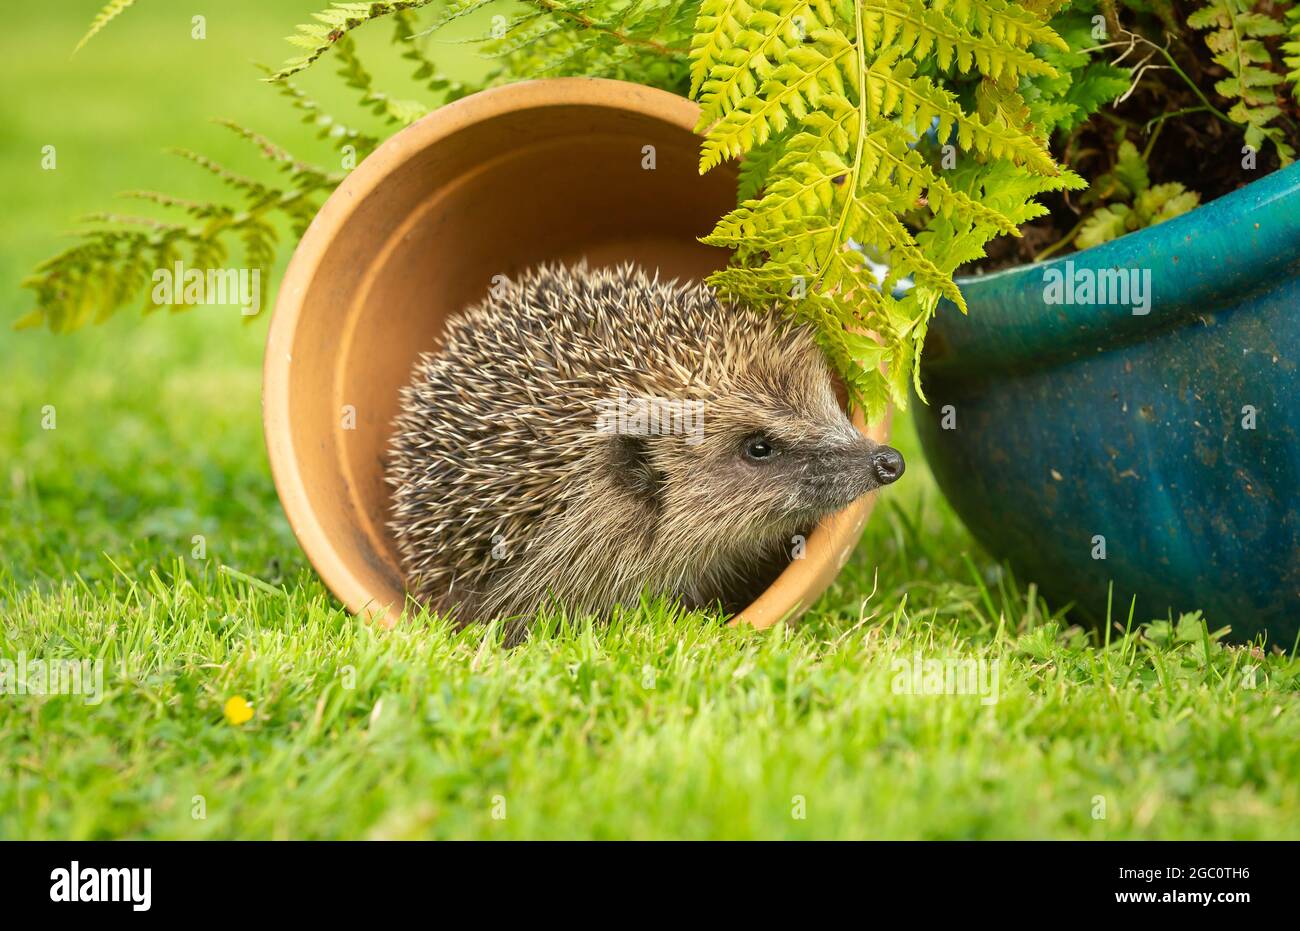 Hedgehog, nome scientifico: Erinaceus Europaeus. Riccio selvatico, nativo, europeo nell'abitudine naturale del giardino che emerge da una pentola della pianta. Primo piano. Horizo Foto Stock